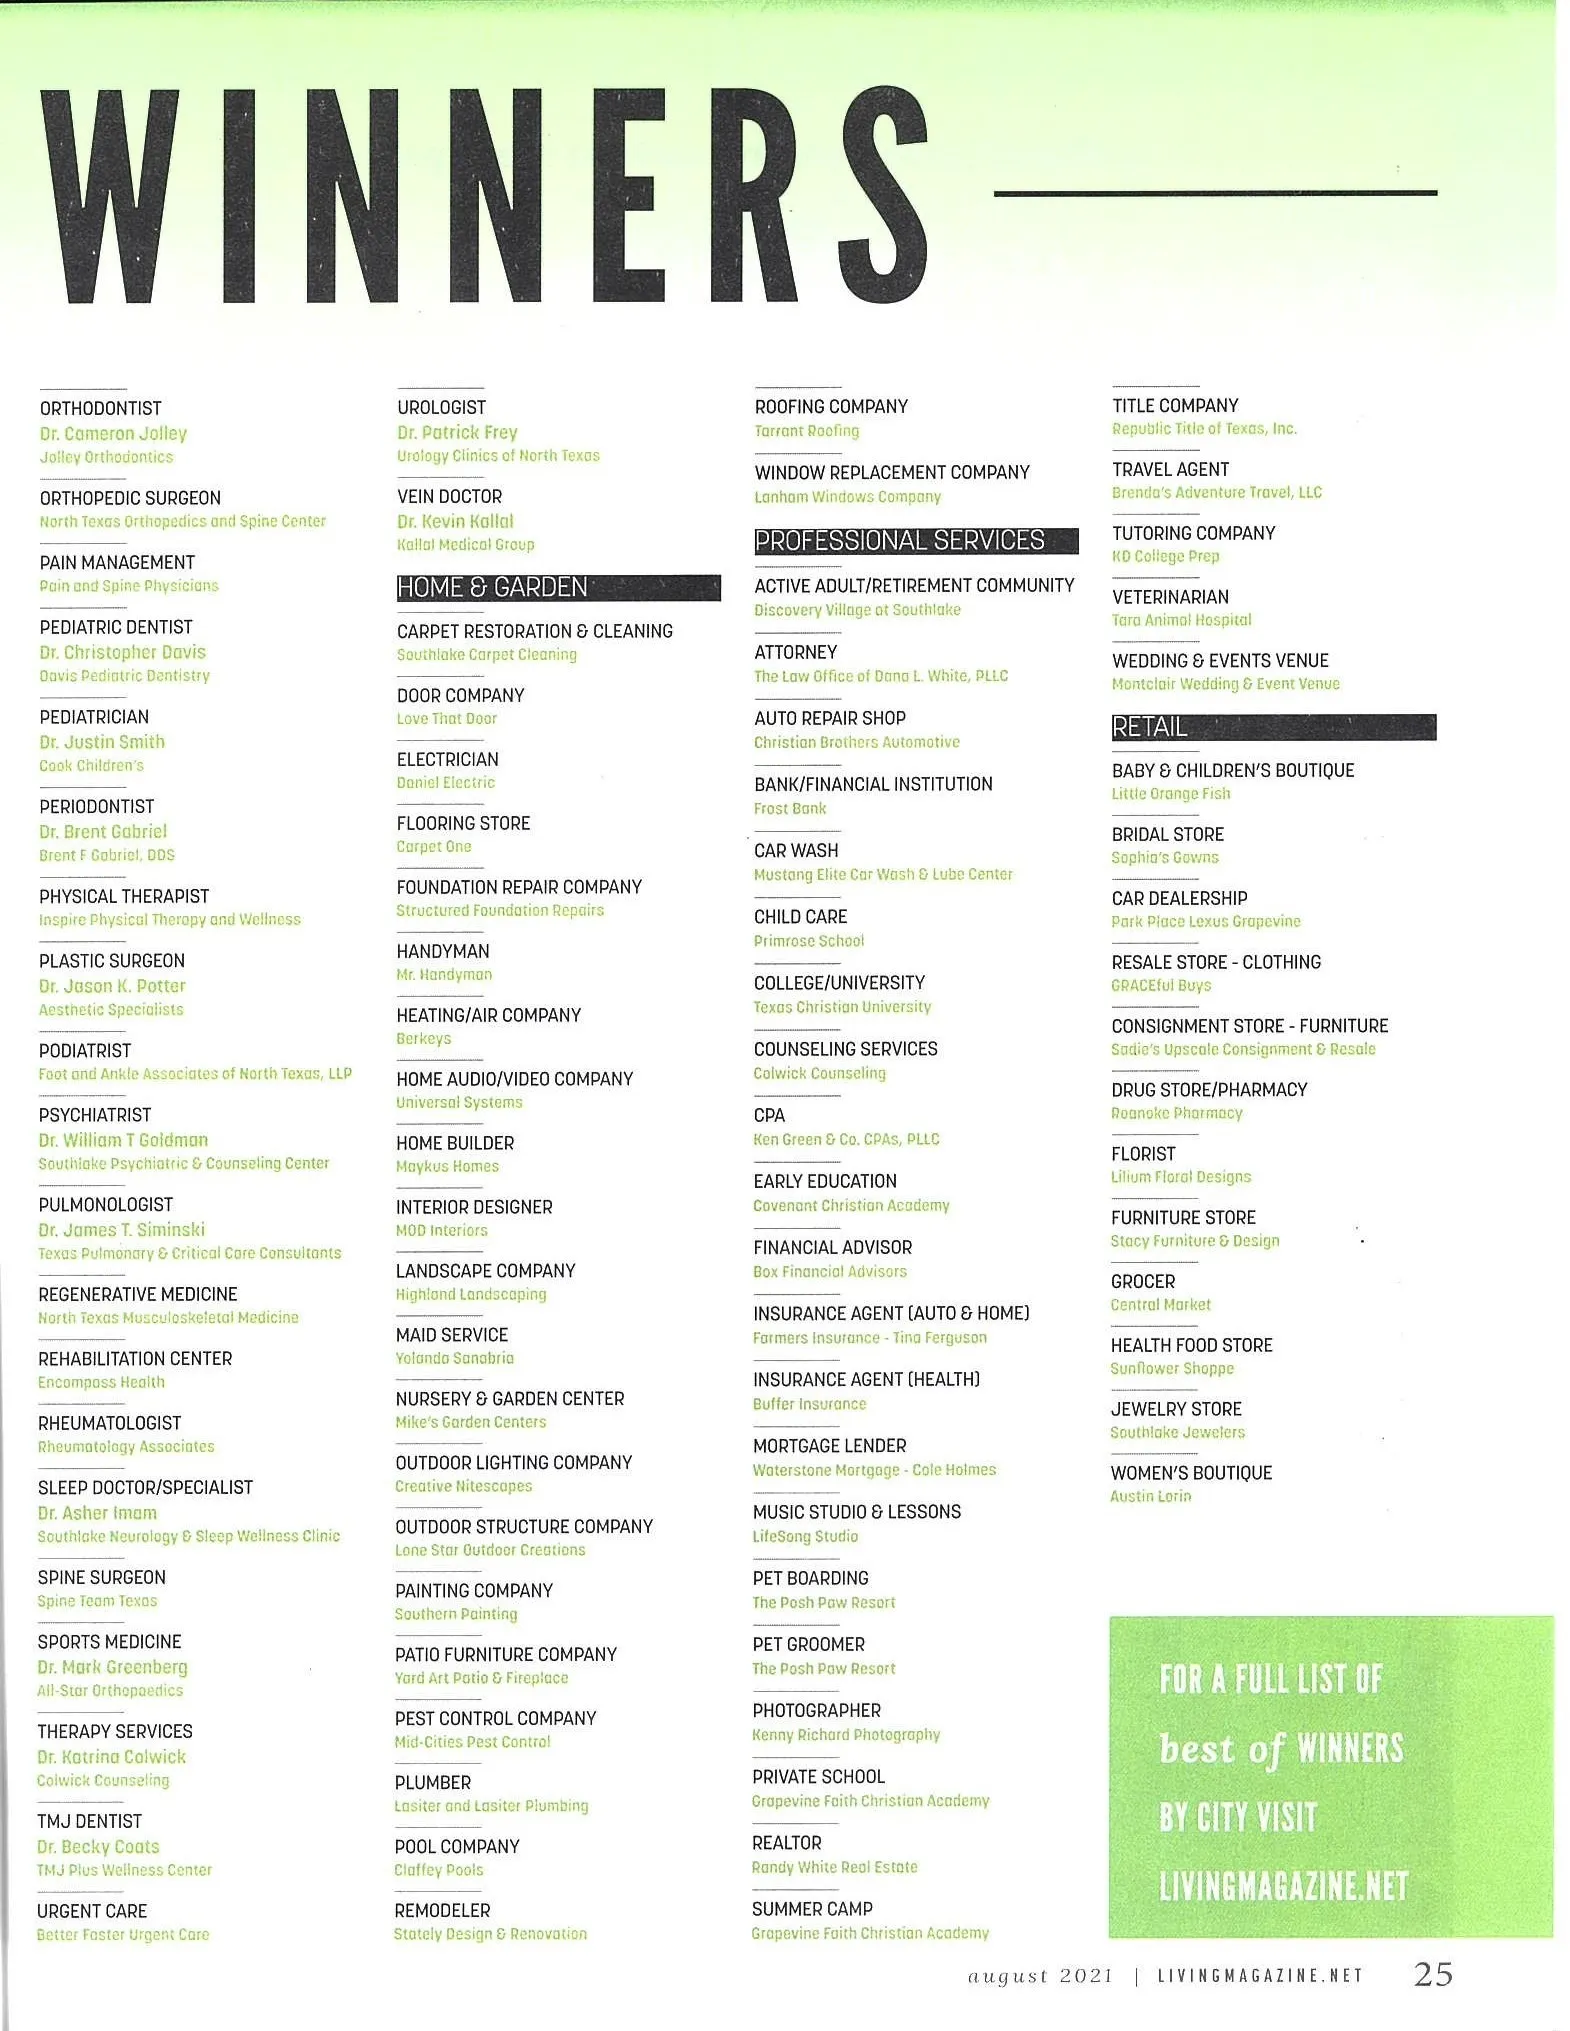 Living Magazine full list of winners